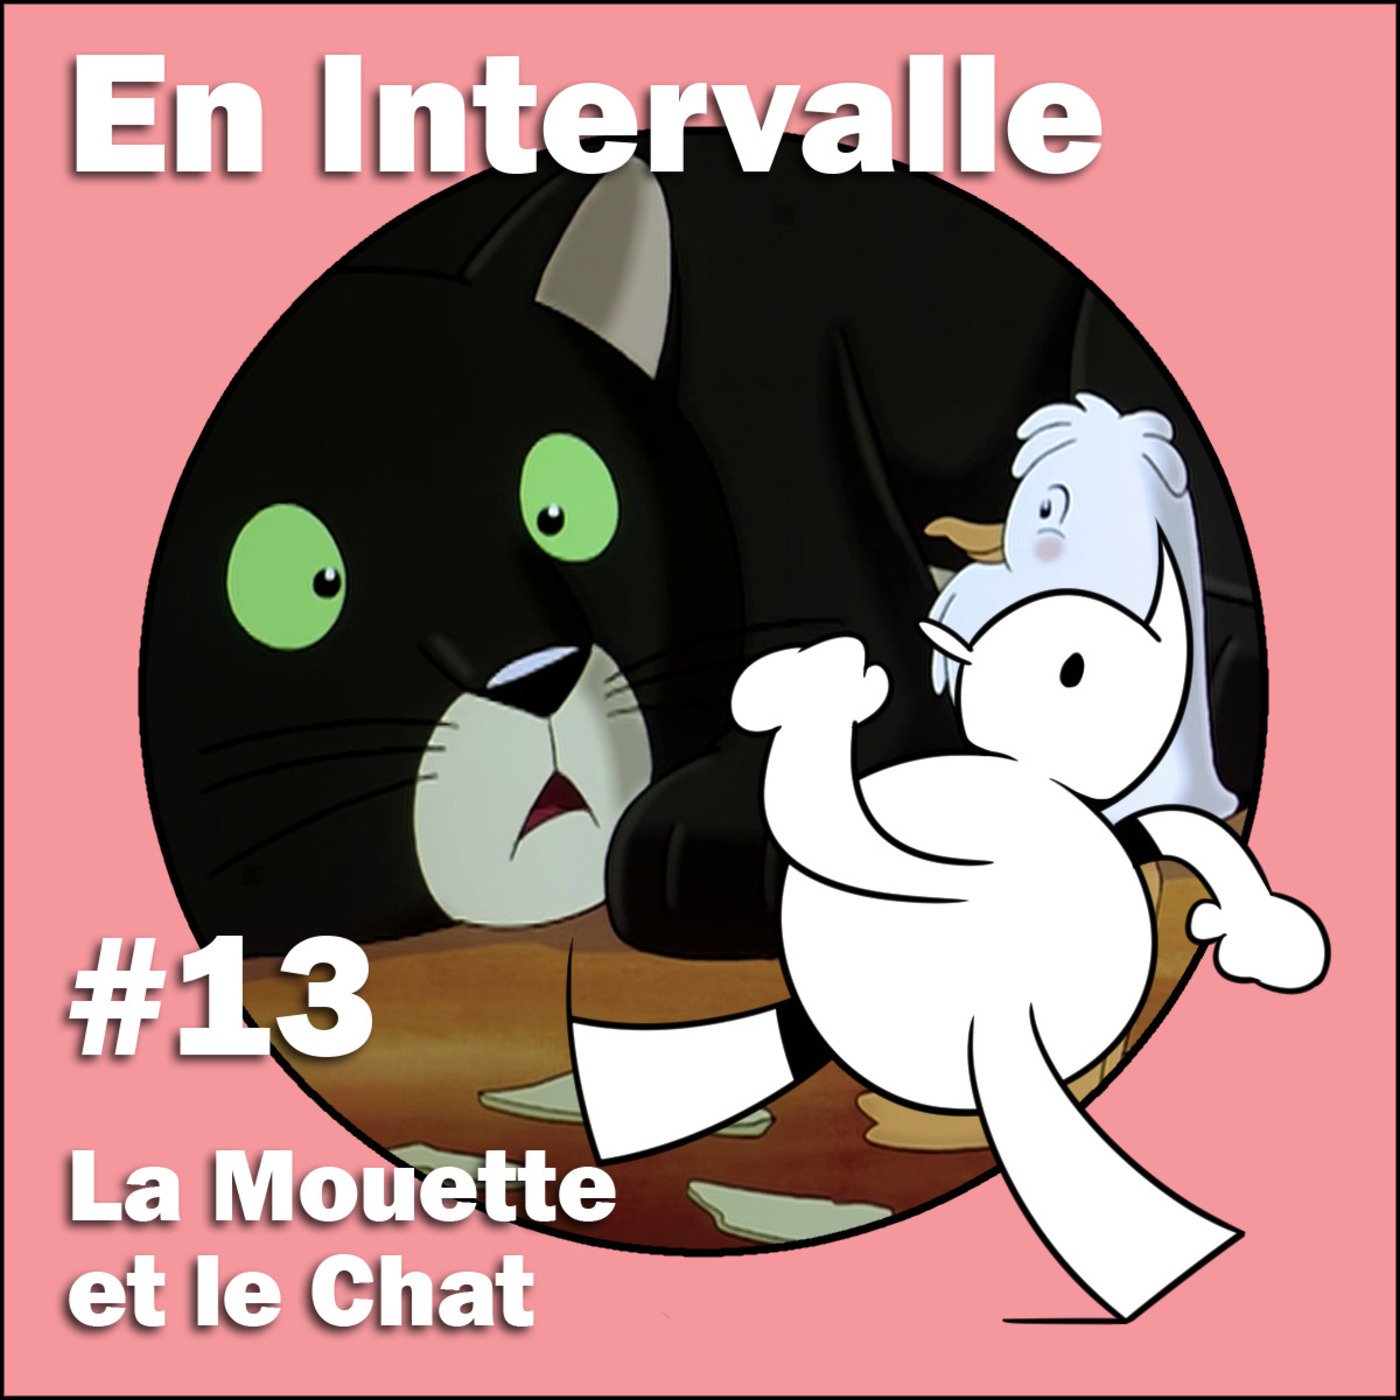 La Mouette et le Chat (En Intervalle #13)